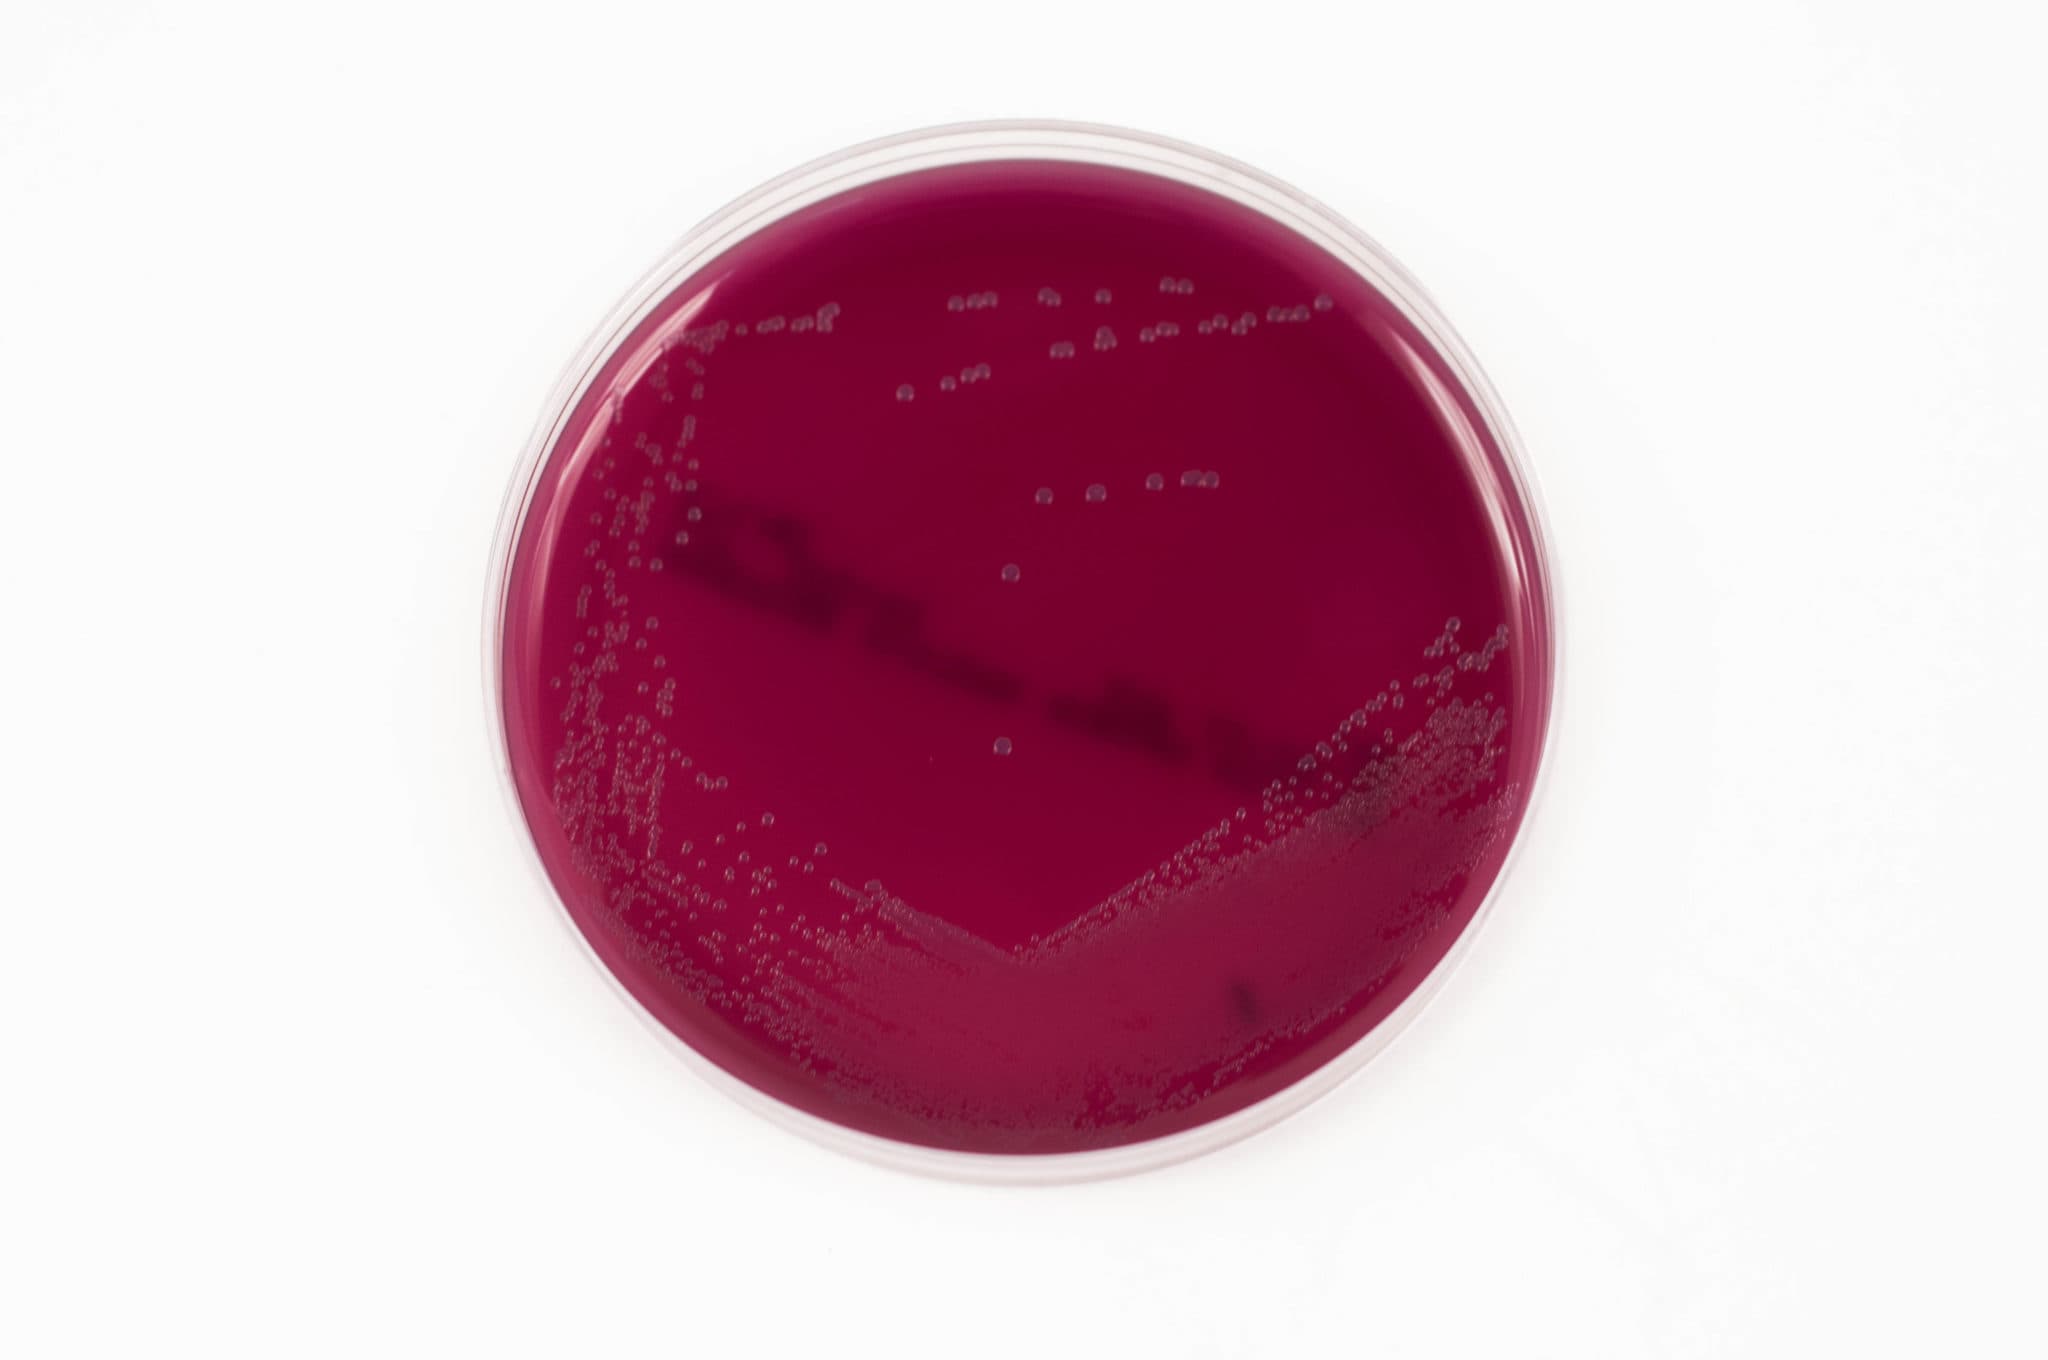 cristAL violet blood agar